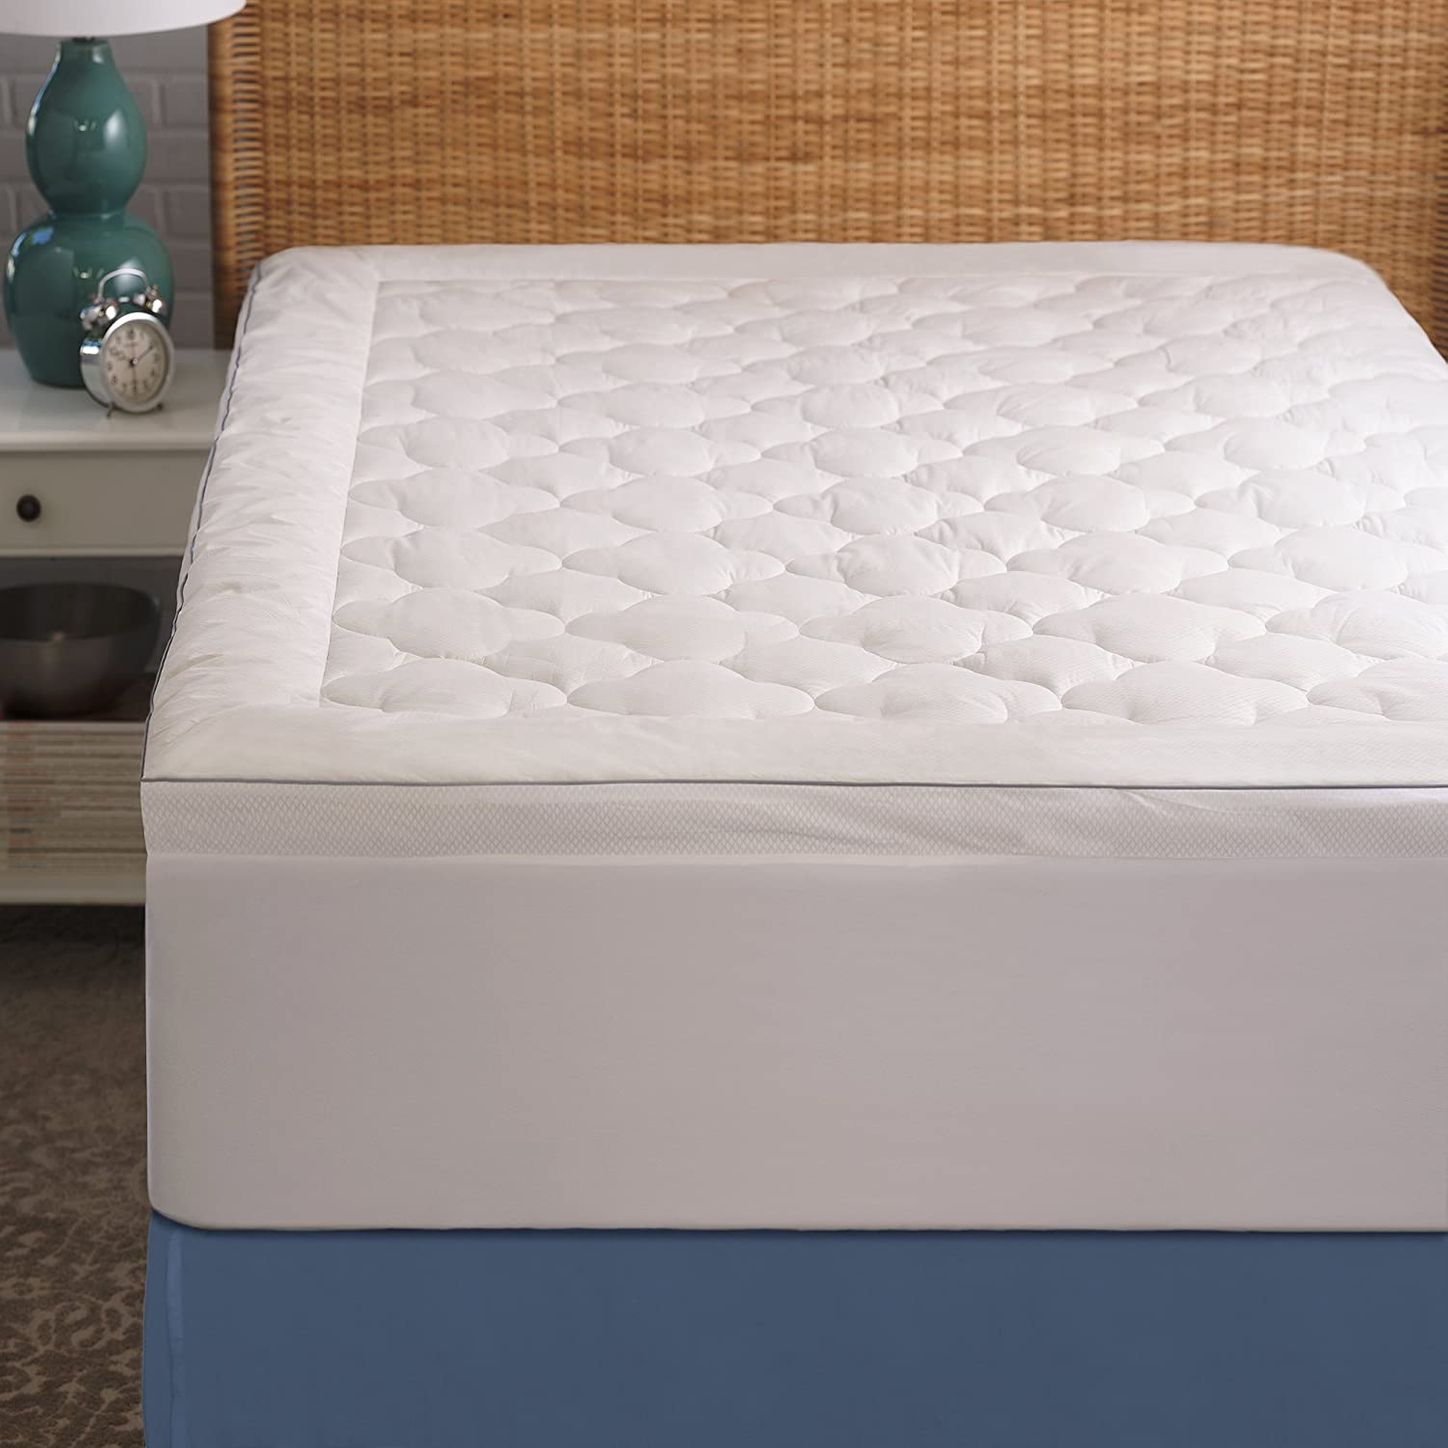 thick foam mattress topper queen light weight cooling